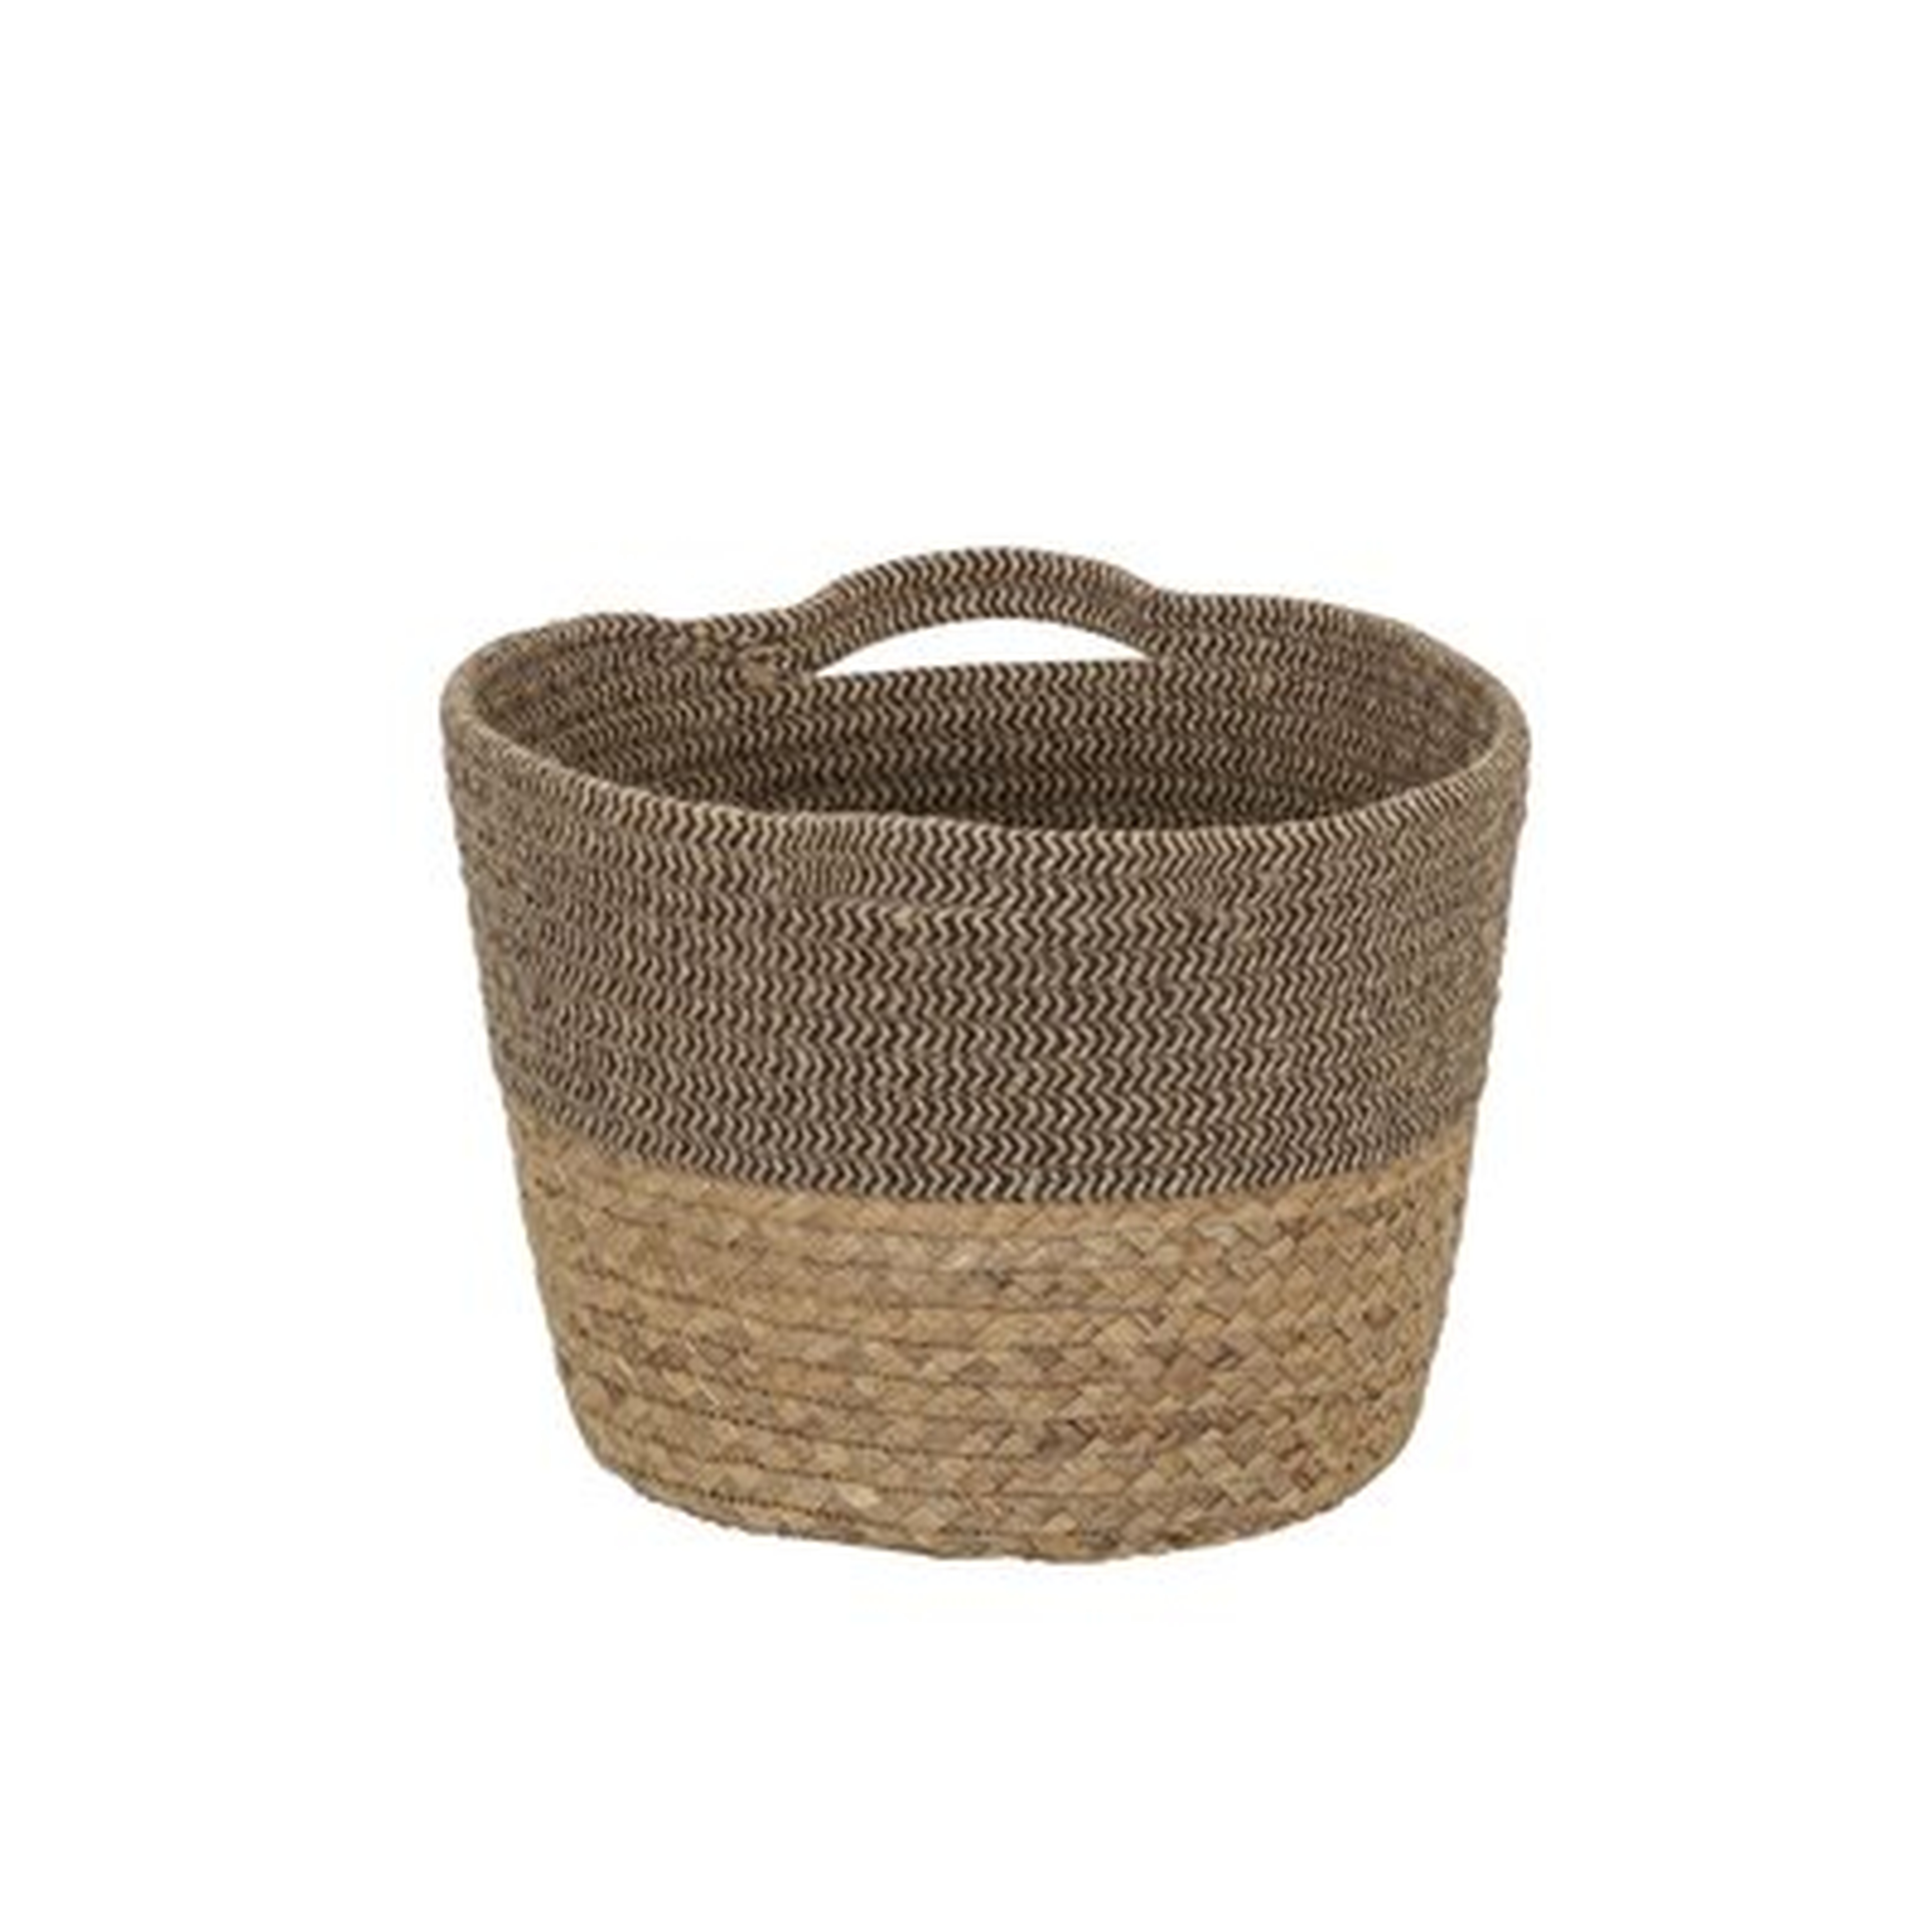 Tweed Cotton Rope & Hyacinth Storage Basket With Side Handles - Wayfair